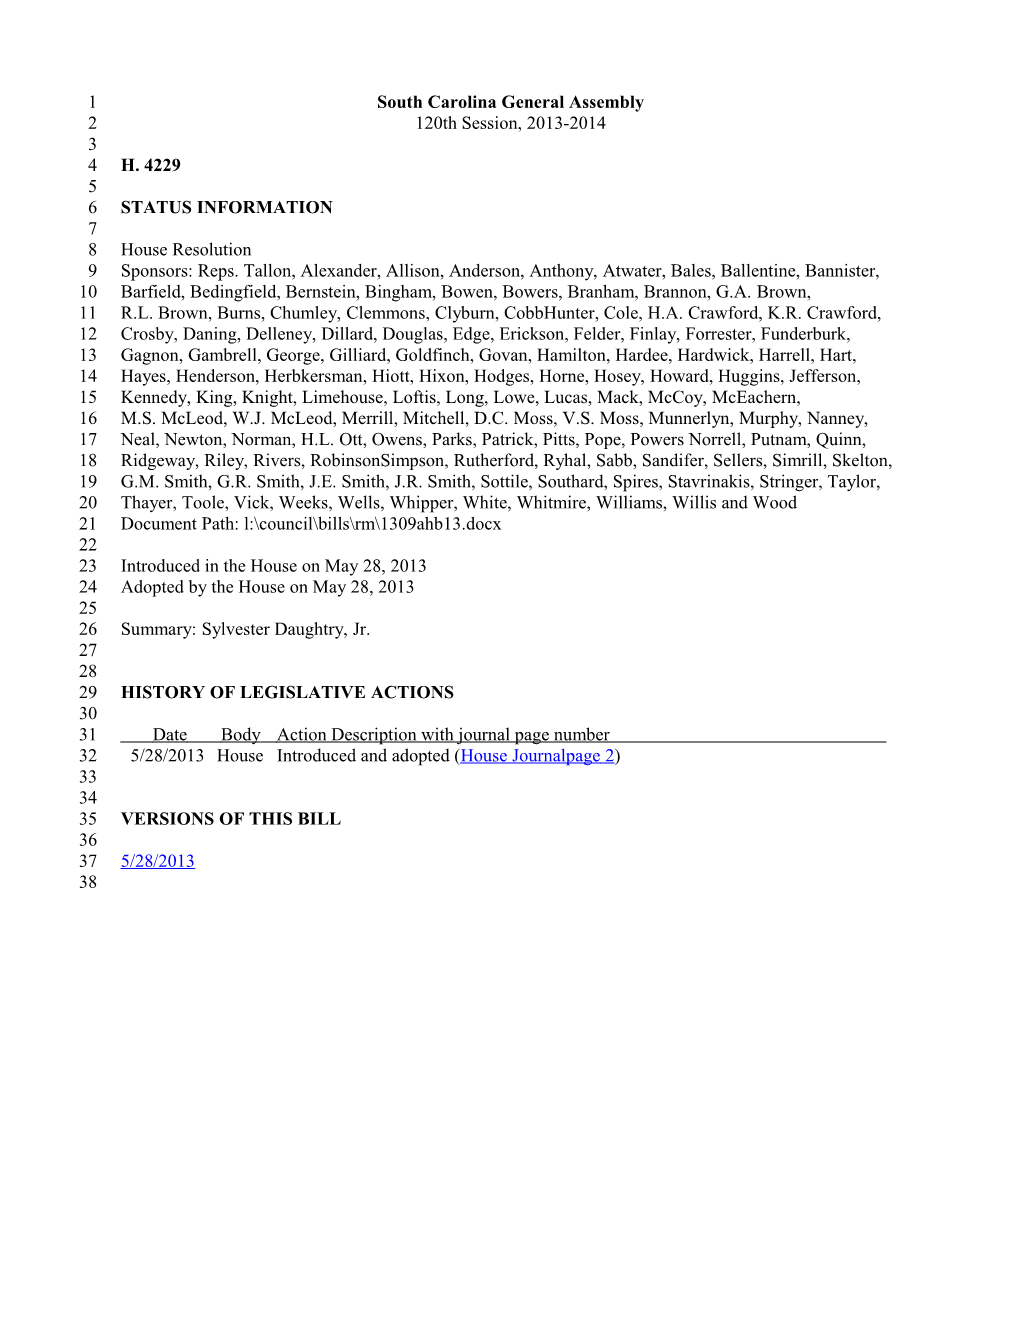 2013-2014 Bill 4229: Sylvester Daughtry, Jr. - South Carolina Legislature Online